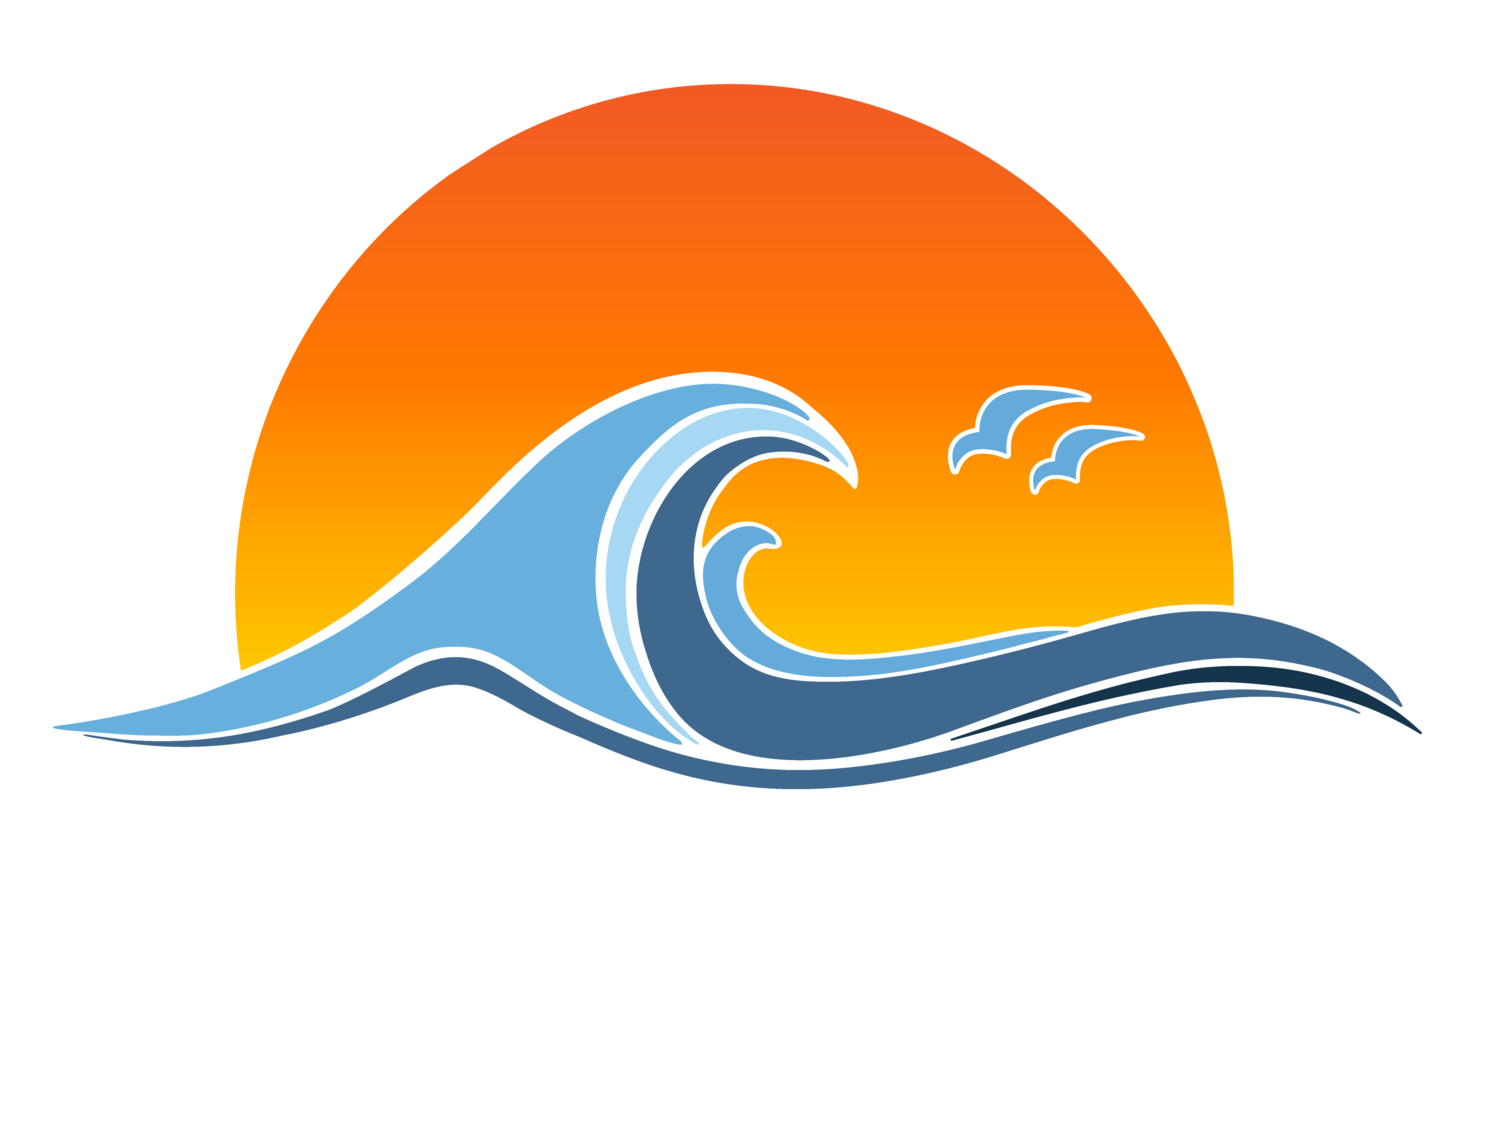 Galveston County Democratic Party